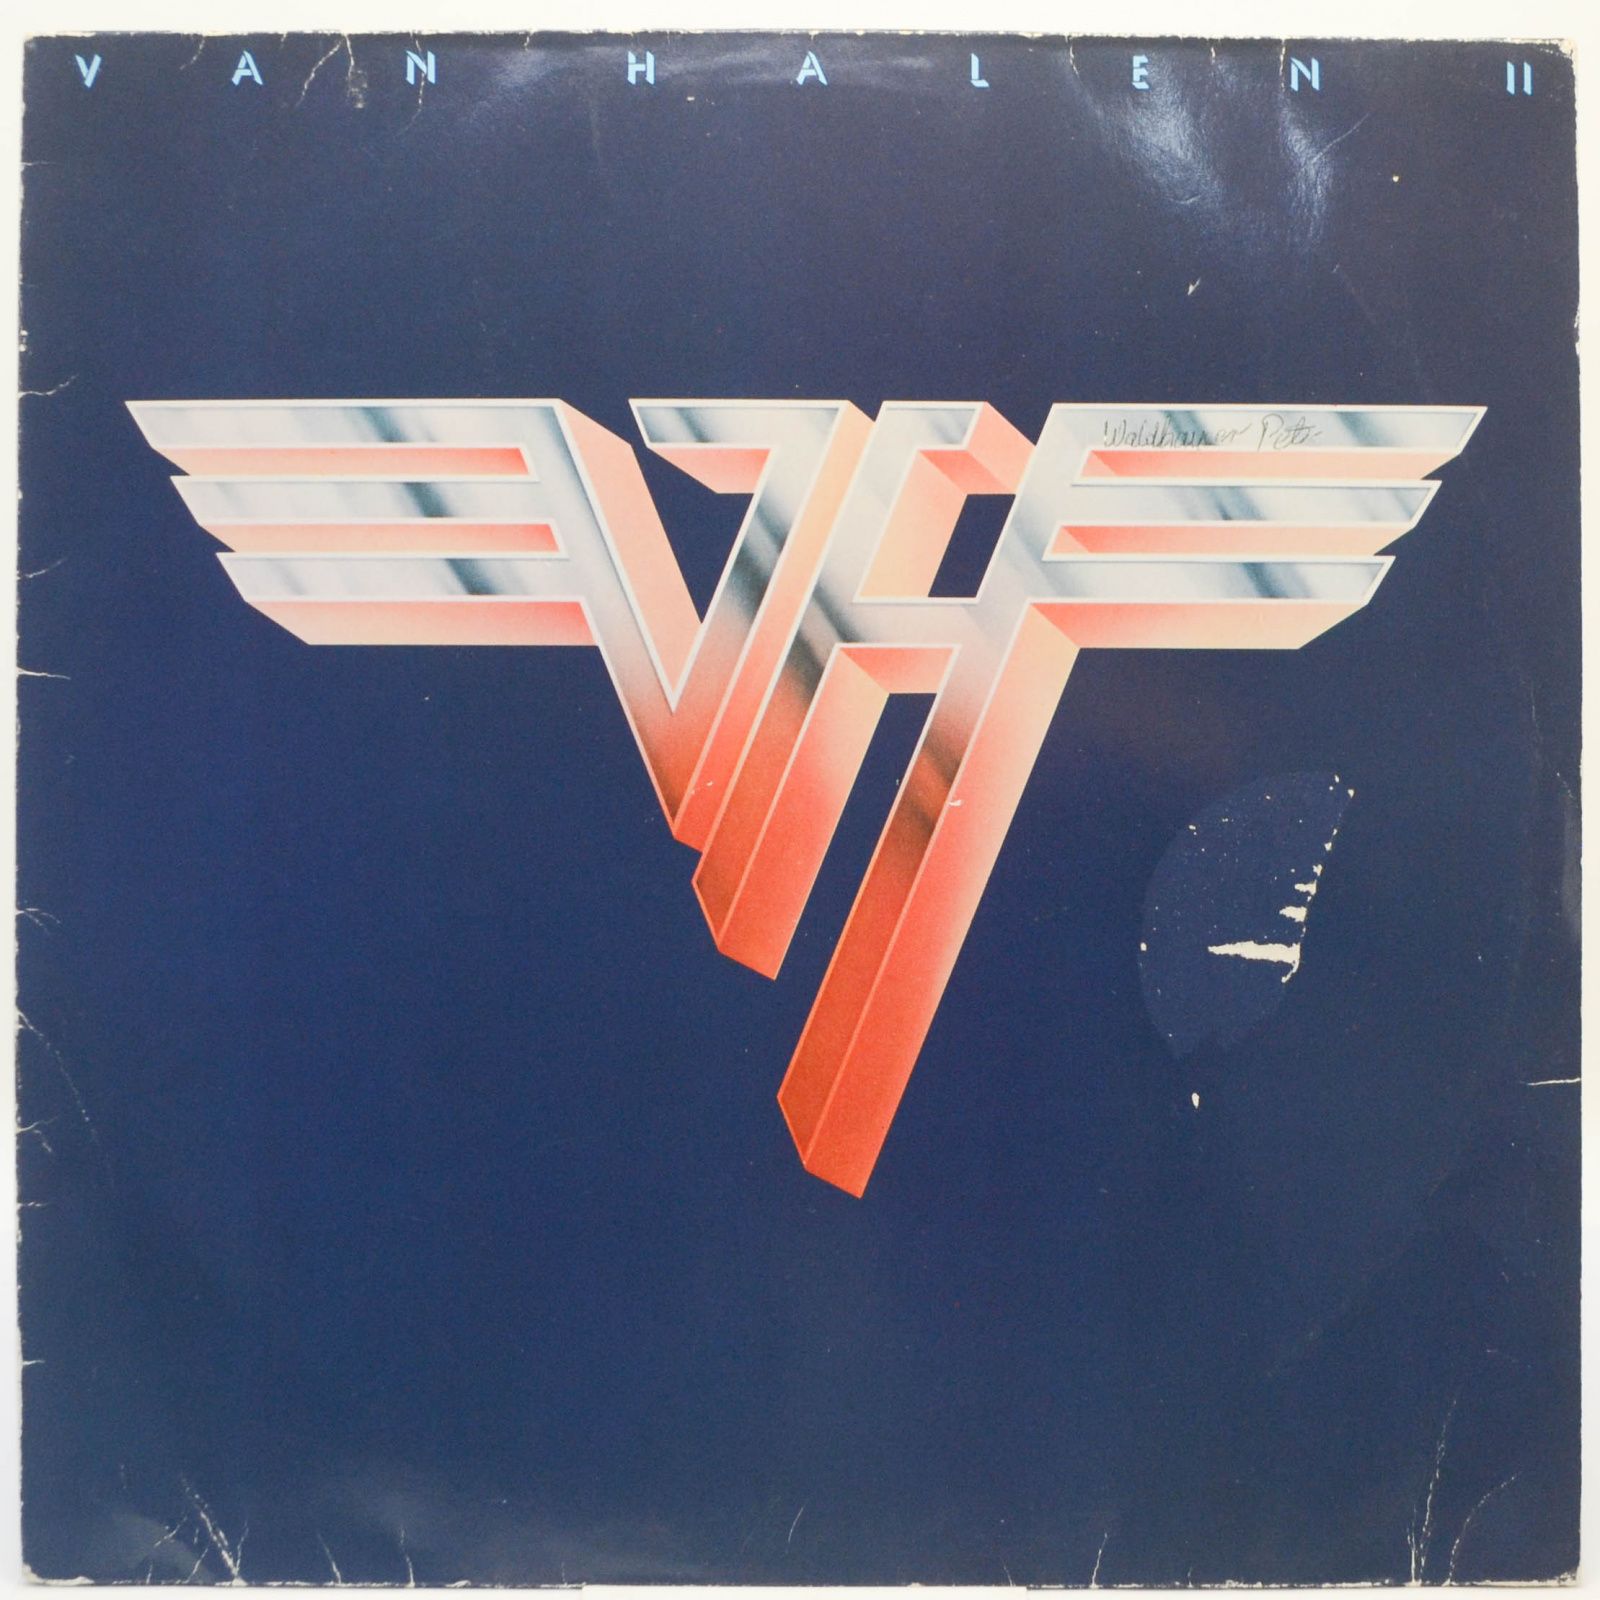 Van Halen — Van Halen II, 1986